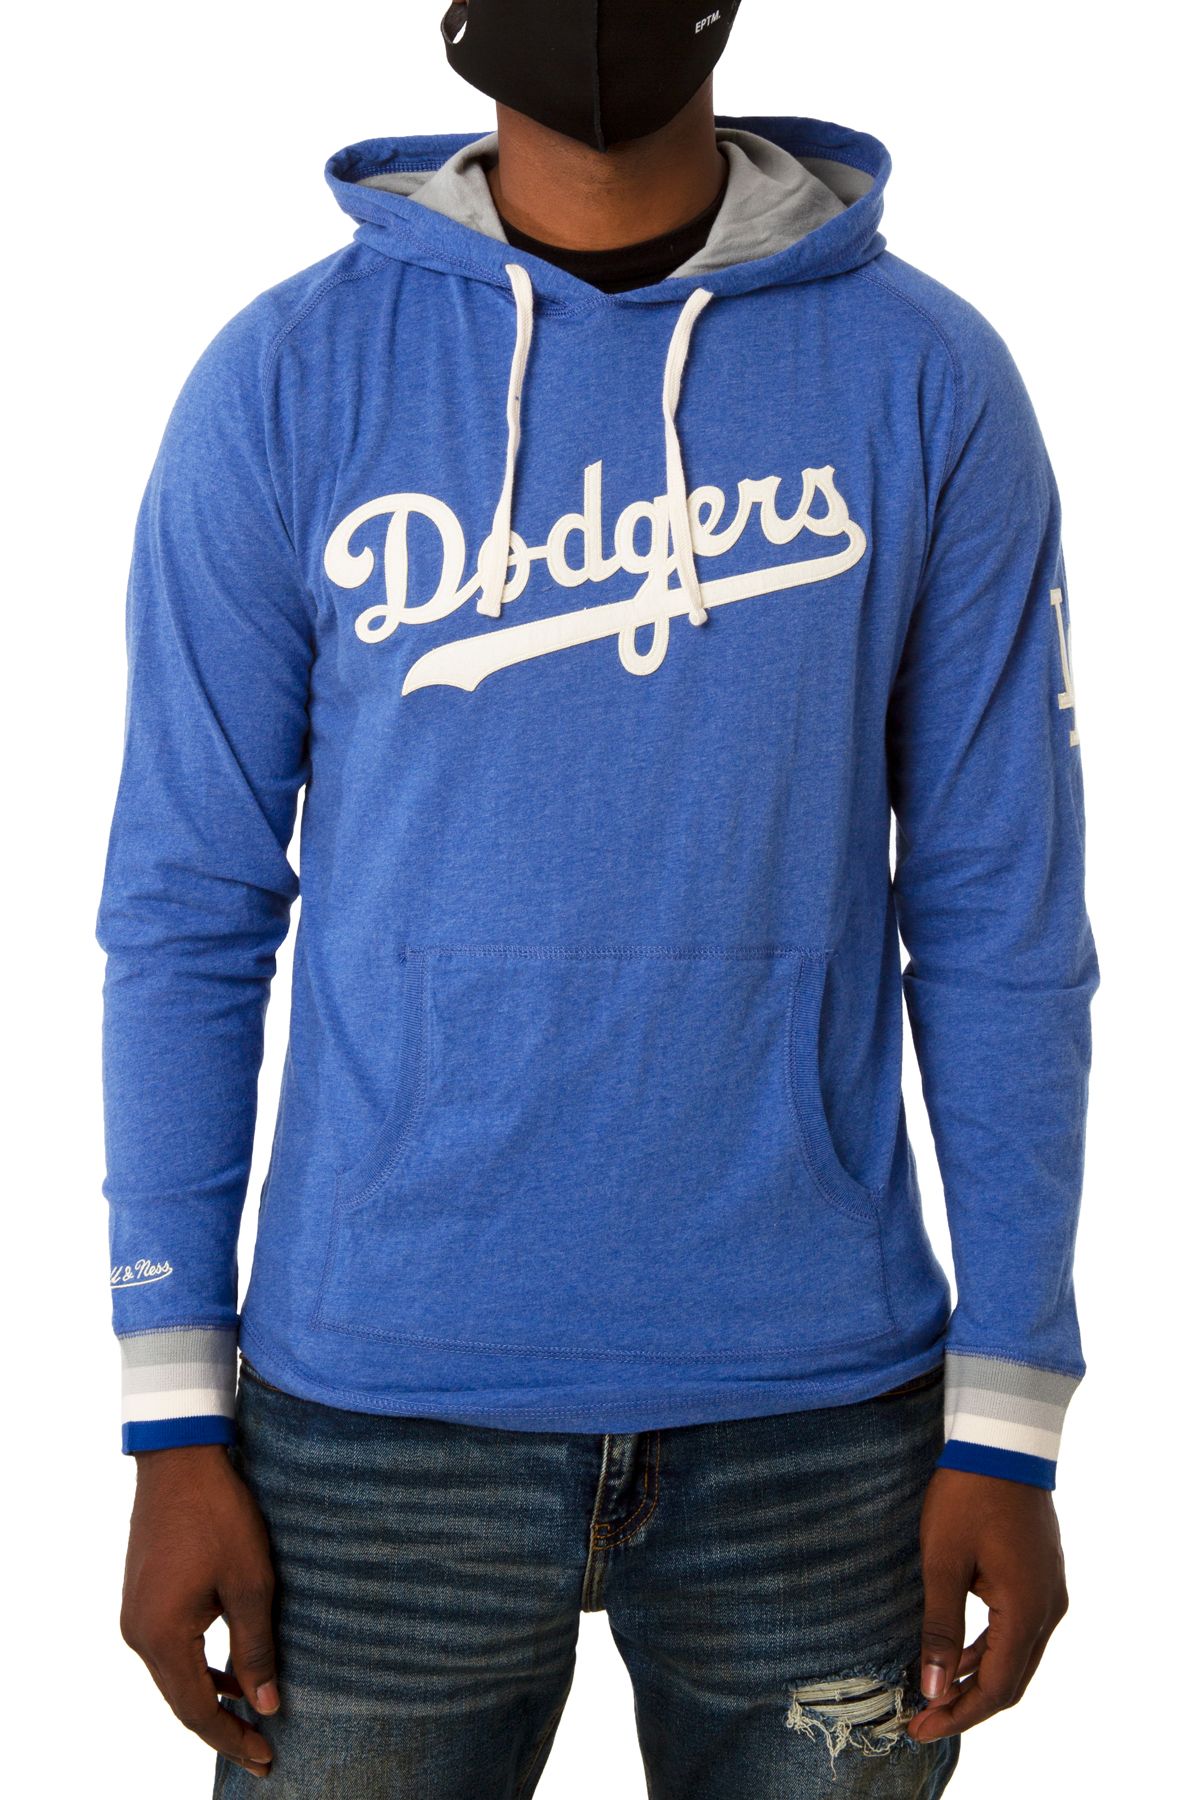 Mlb Los Angeles Dodgers Women's Lightweight Bi-blend Hooded T-shirt - Xs :  Target